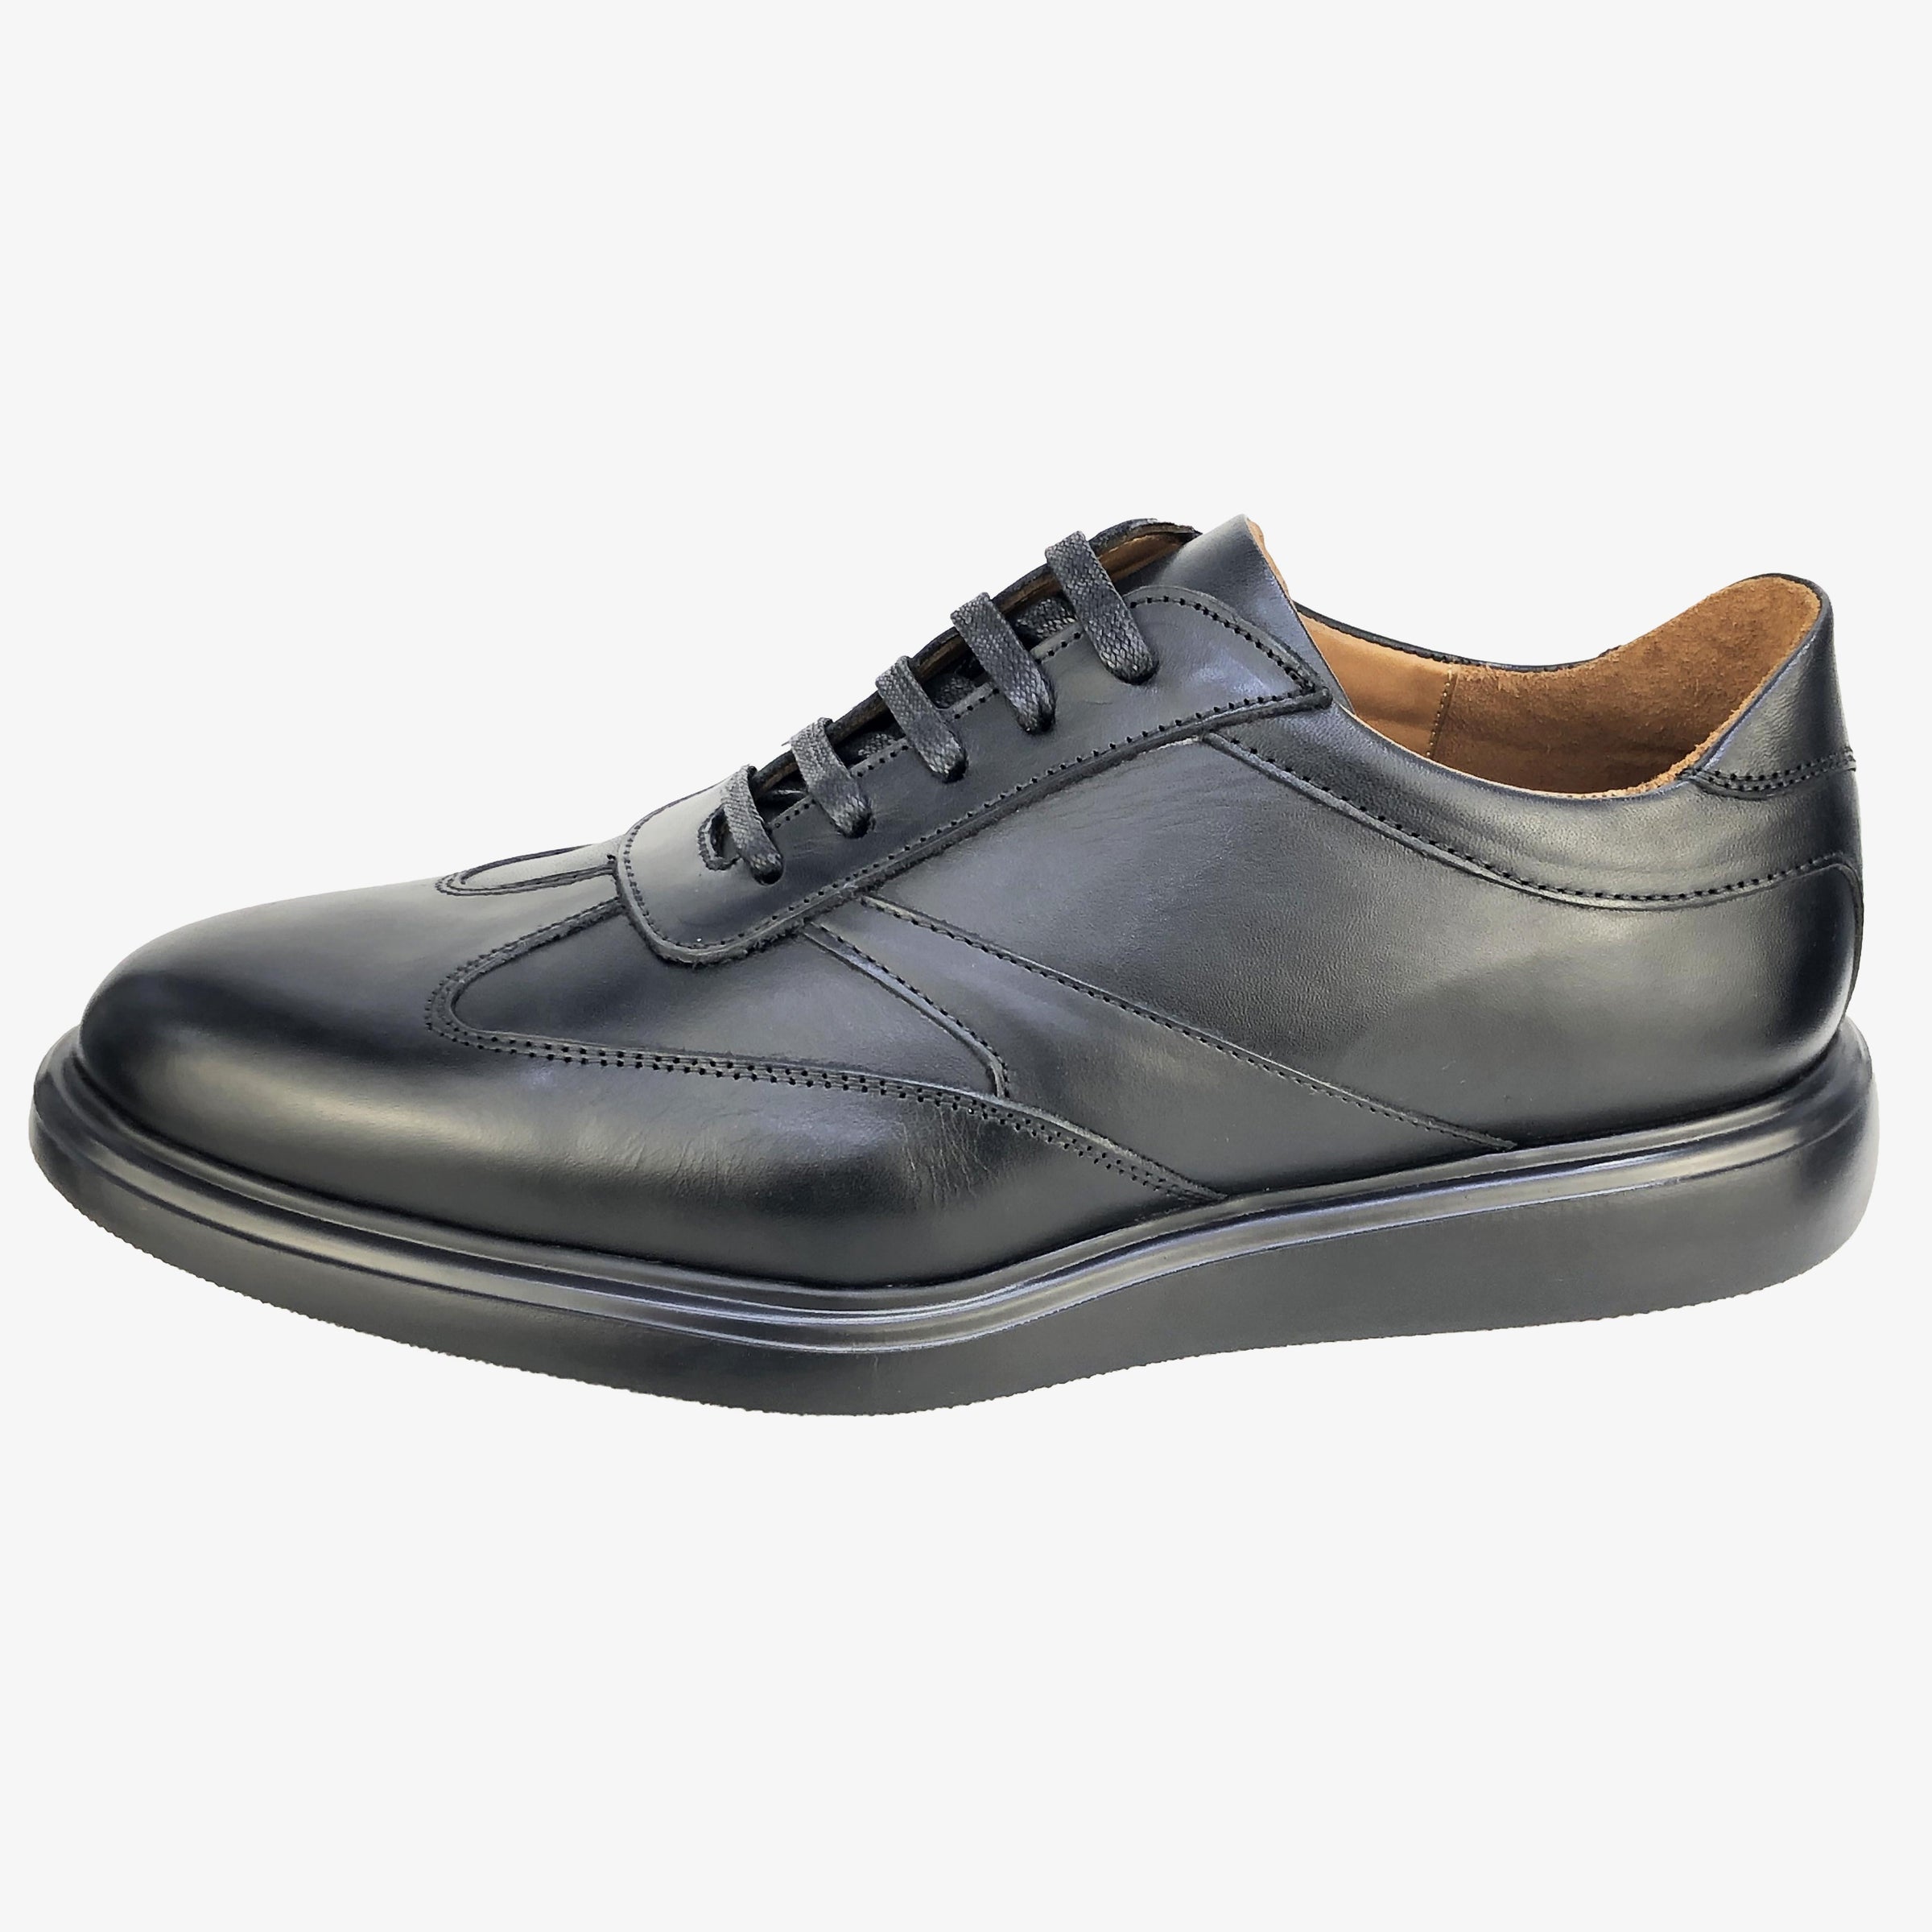 BSK422-015 - Chaussure cuir NOIR - deluxe-maroc